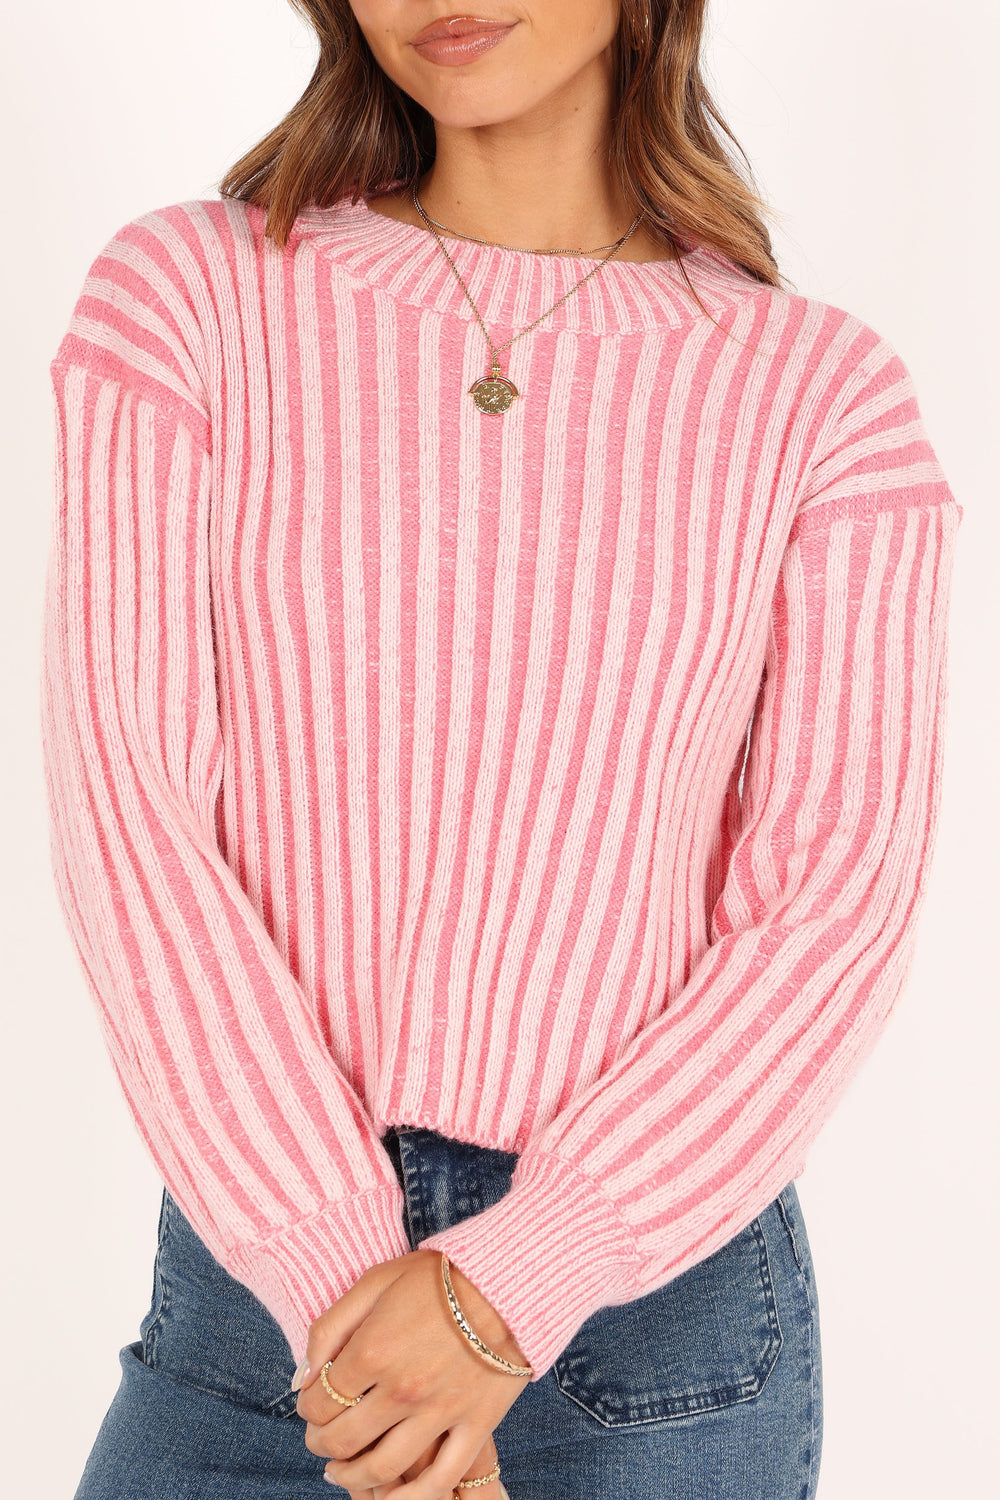 KNITWEAR @Milly Knit Sweater - Pink